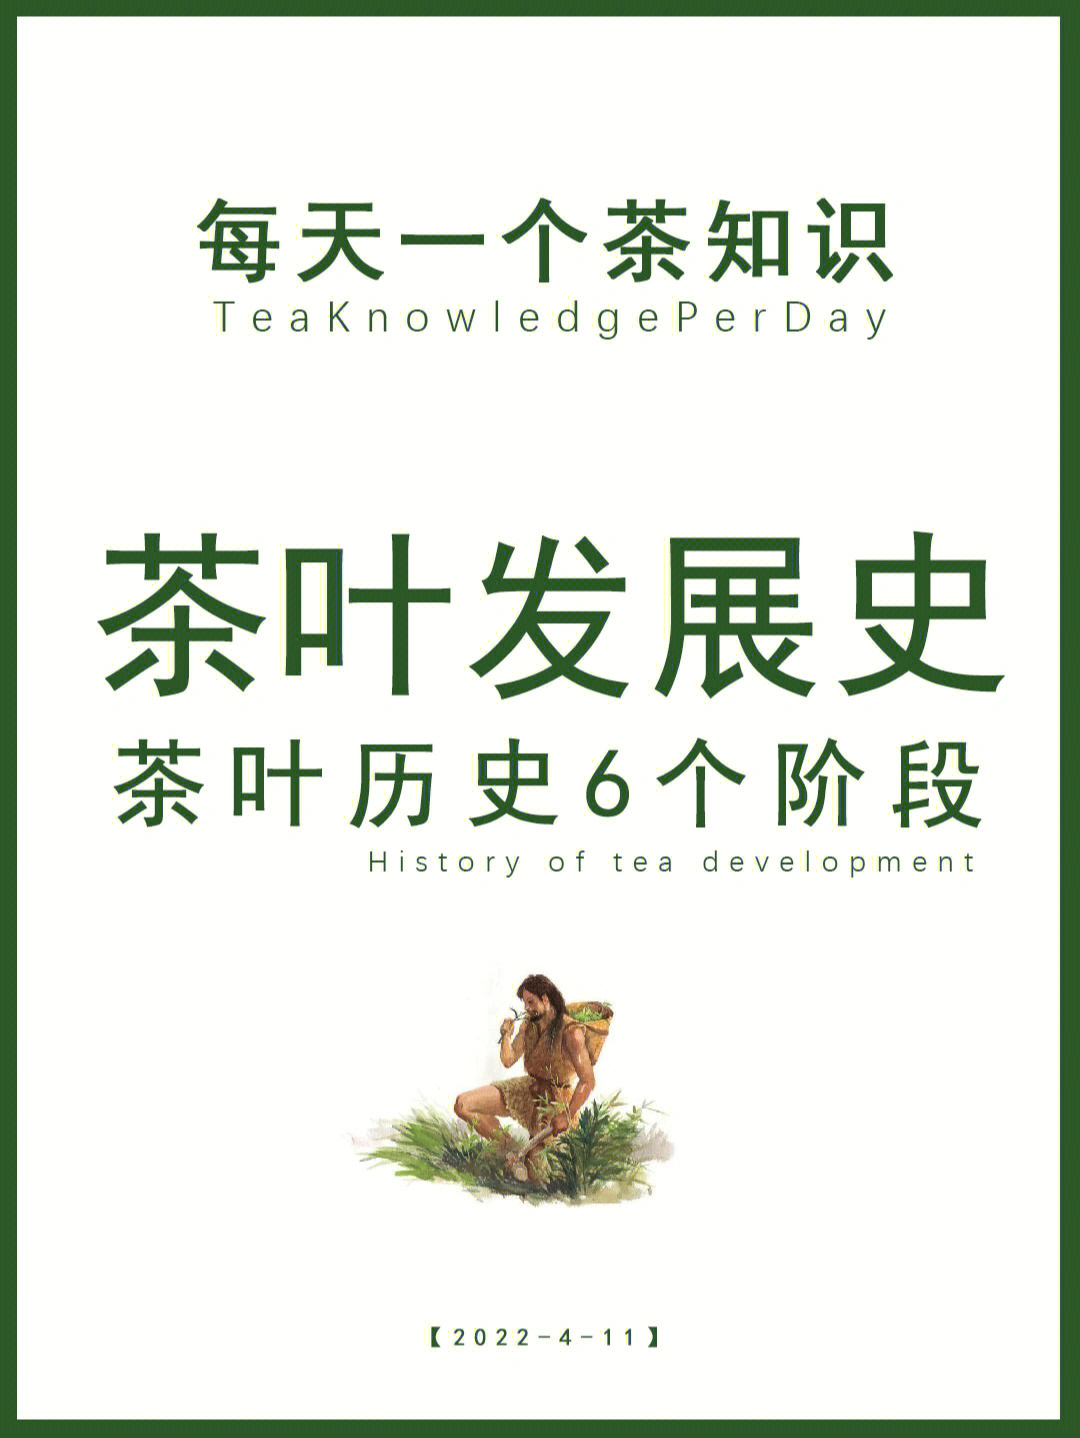 一文读懂中国茶发展的6个重要阶段